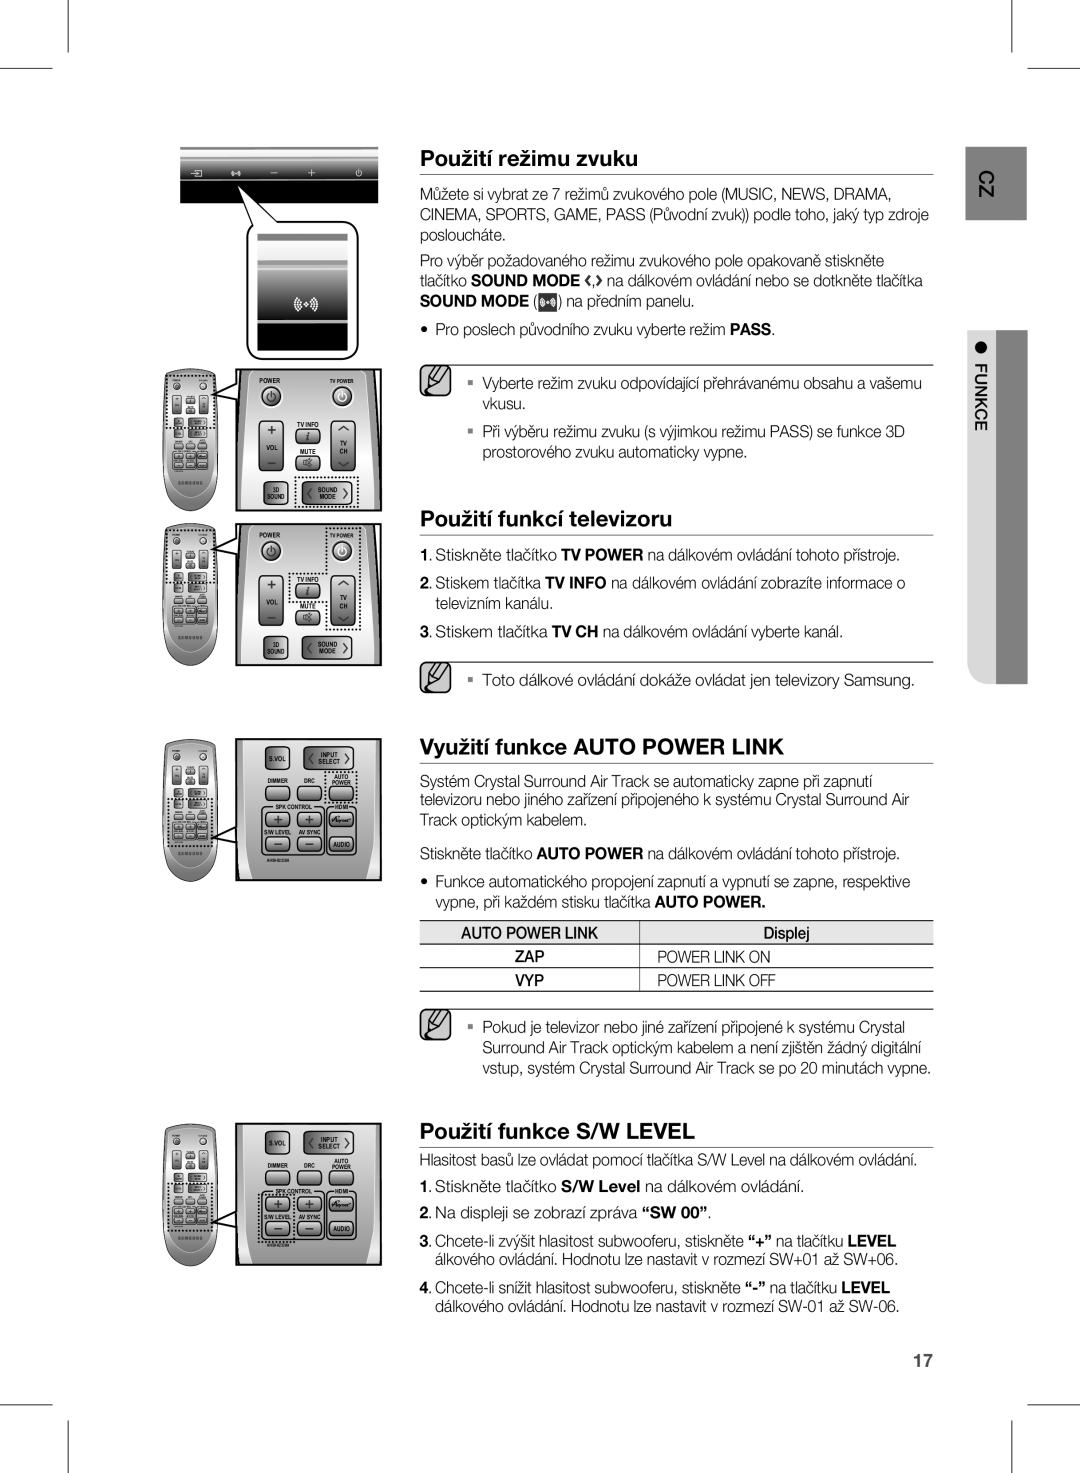 Samsung HW-D450/EN, HW-D450/ZA manual Auto Power Link, Power Link on, Power Link OFF 